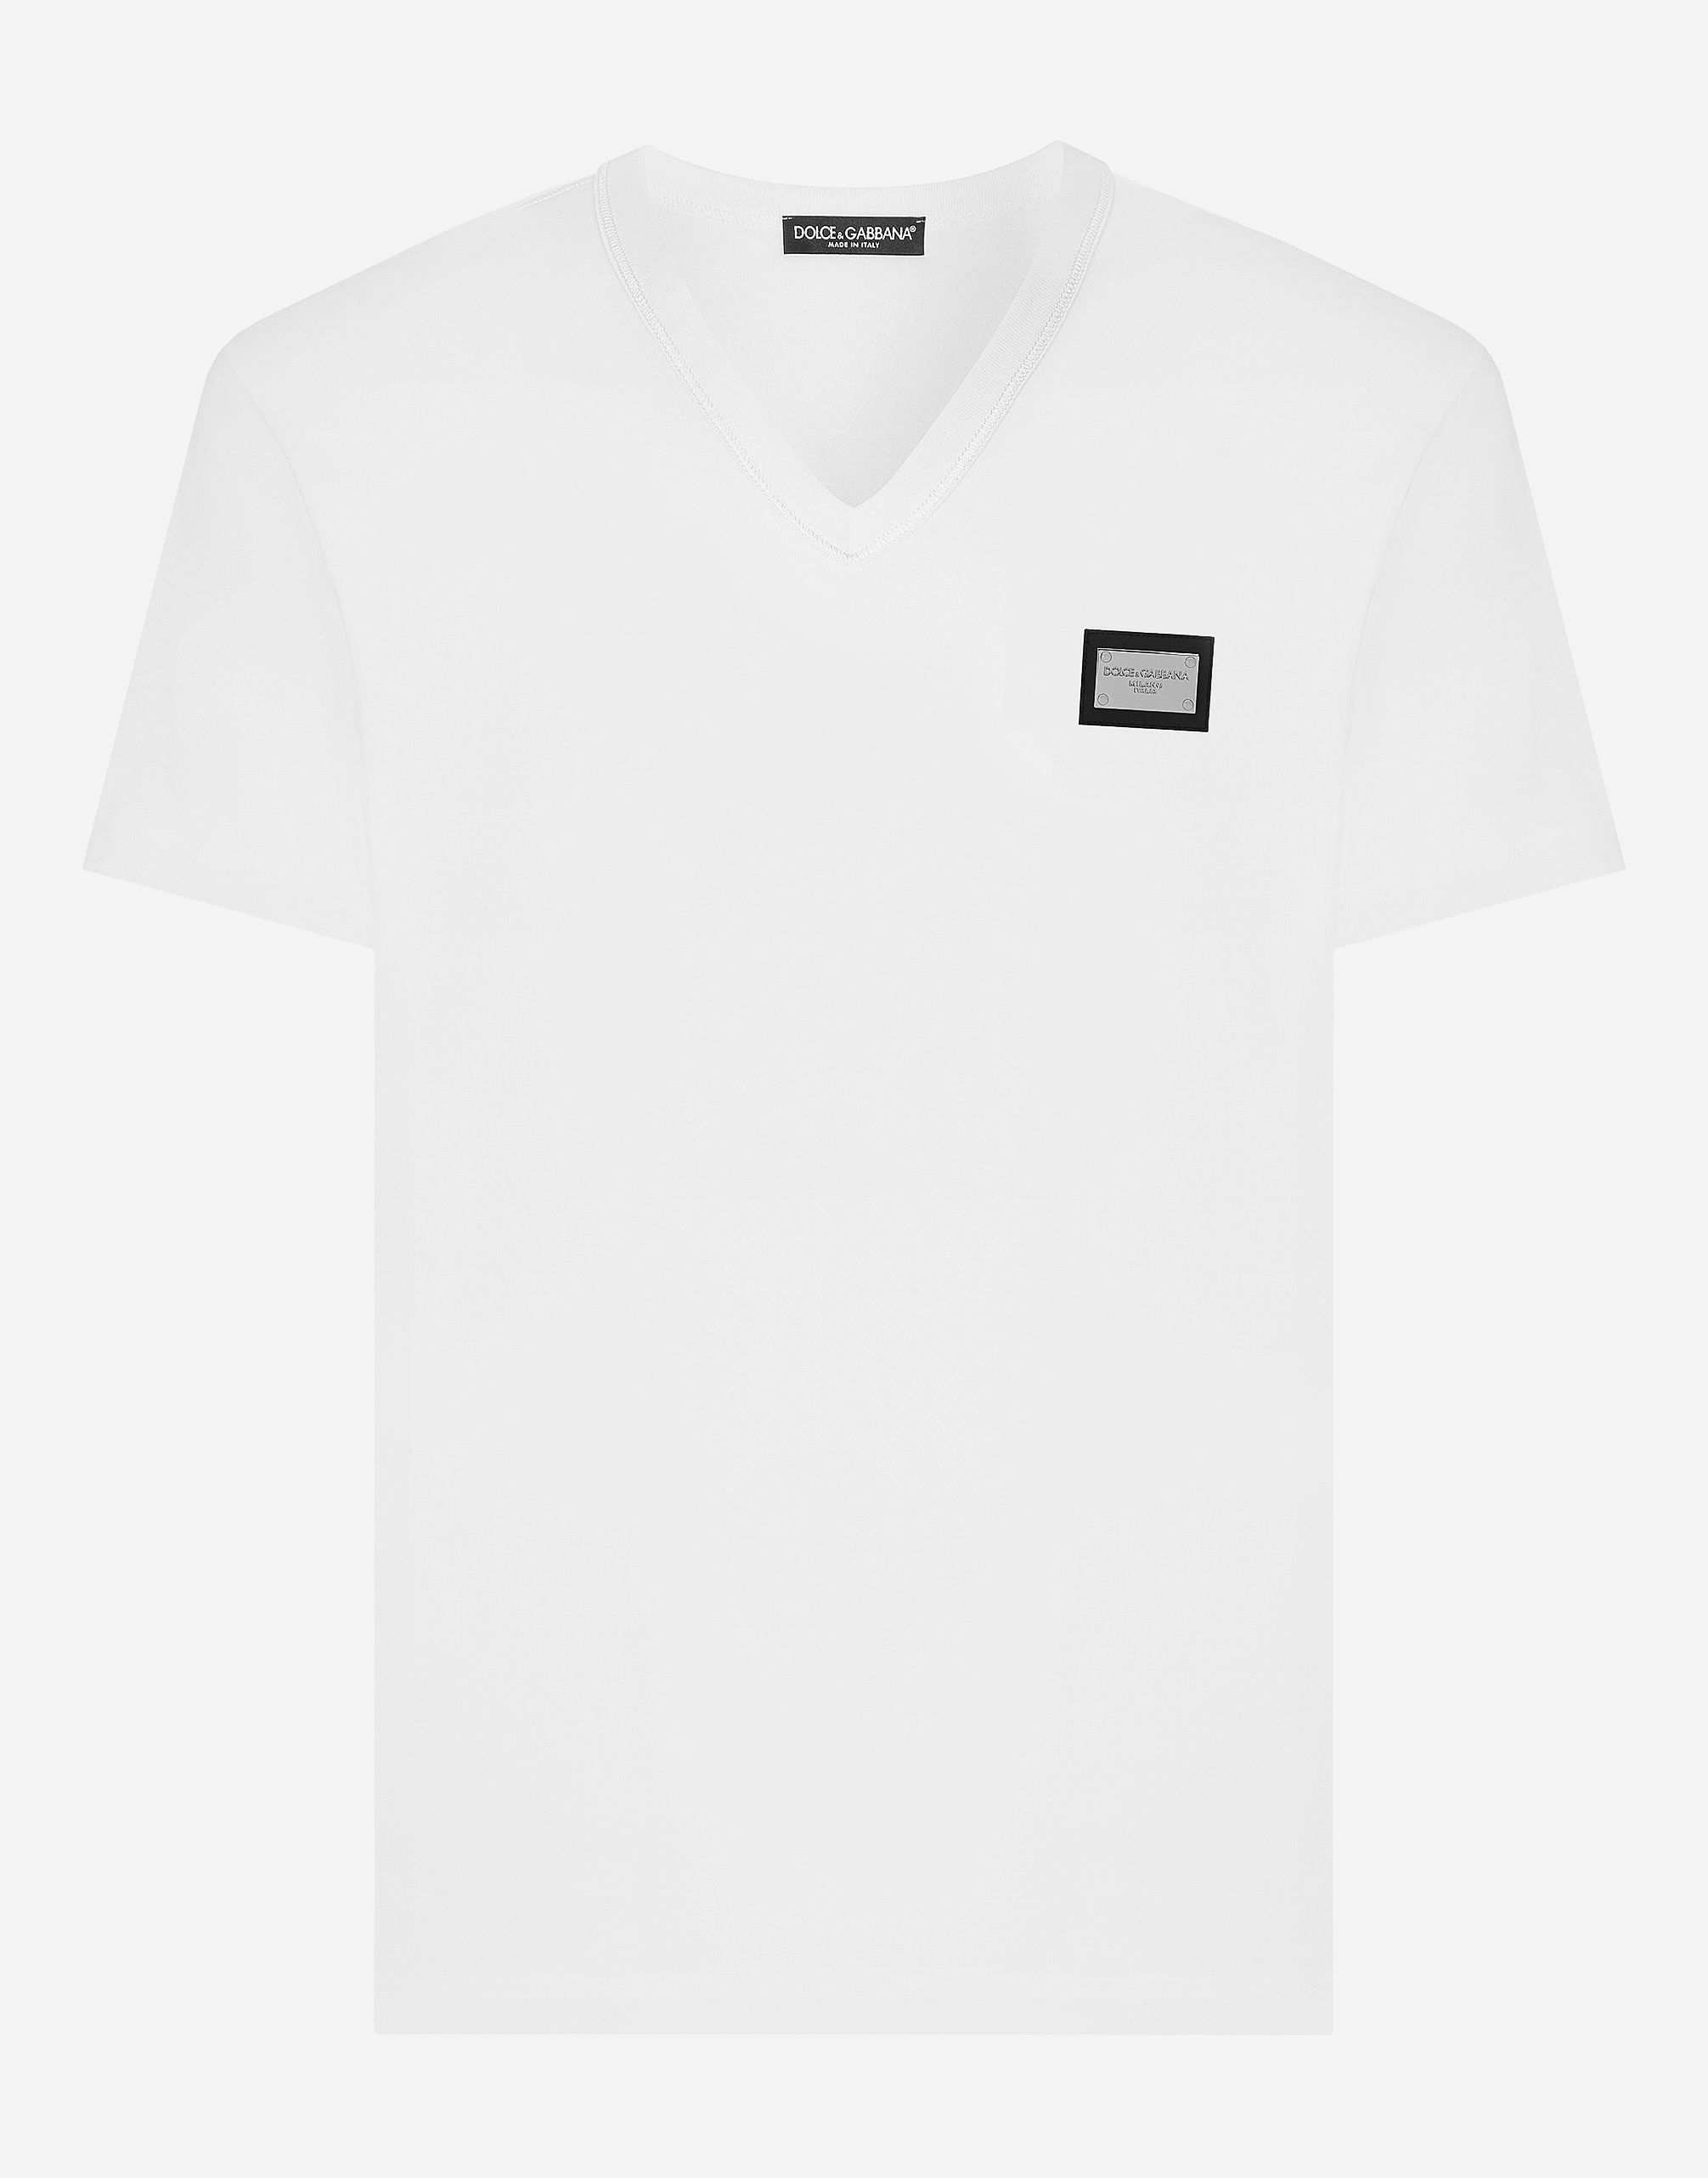 ホワイトのメンズ Cotton V-neck T-shirt with branded tag 